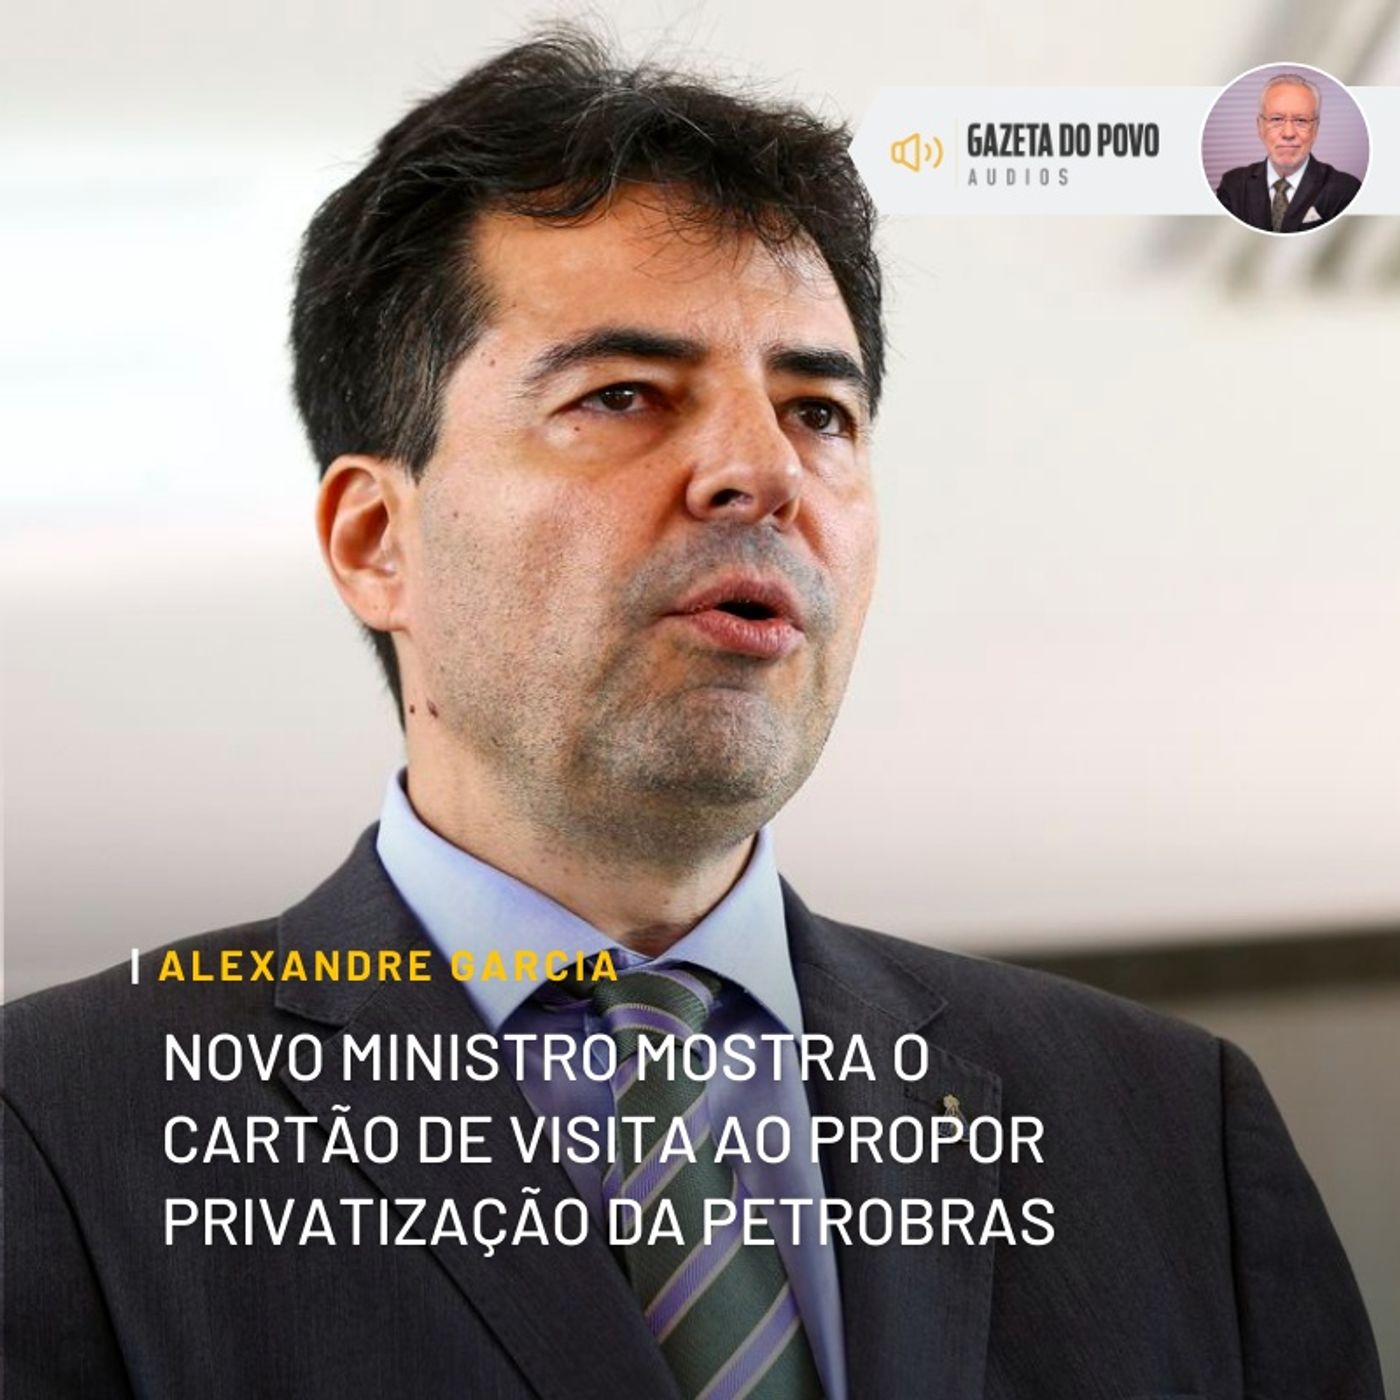 Novo ministro mostra o cartão de visita ao propor privatização da Petrobras